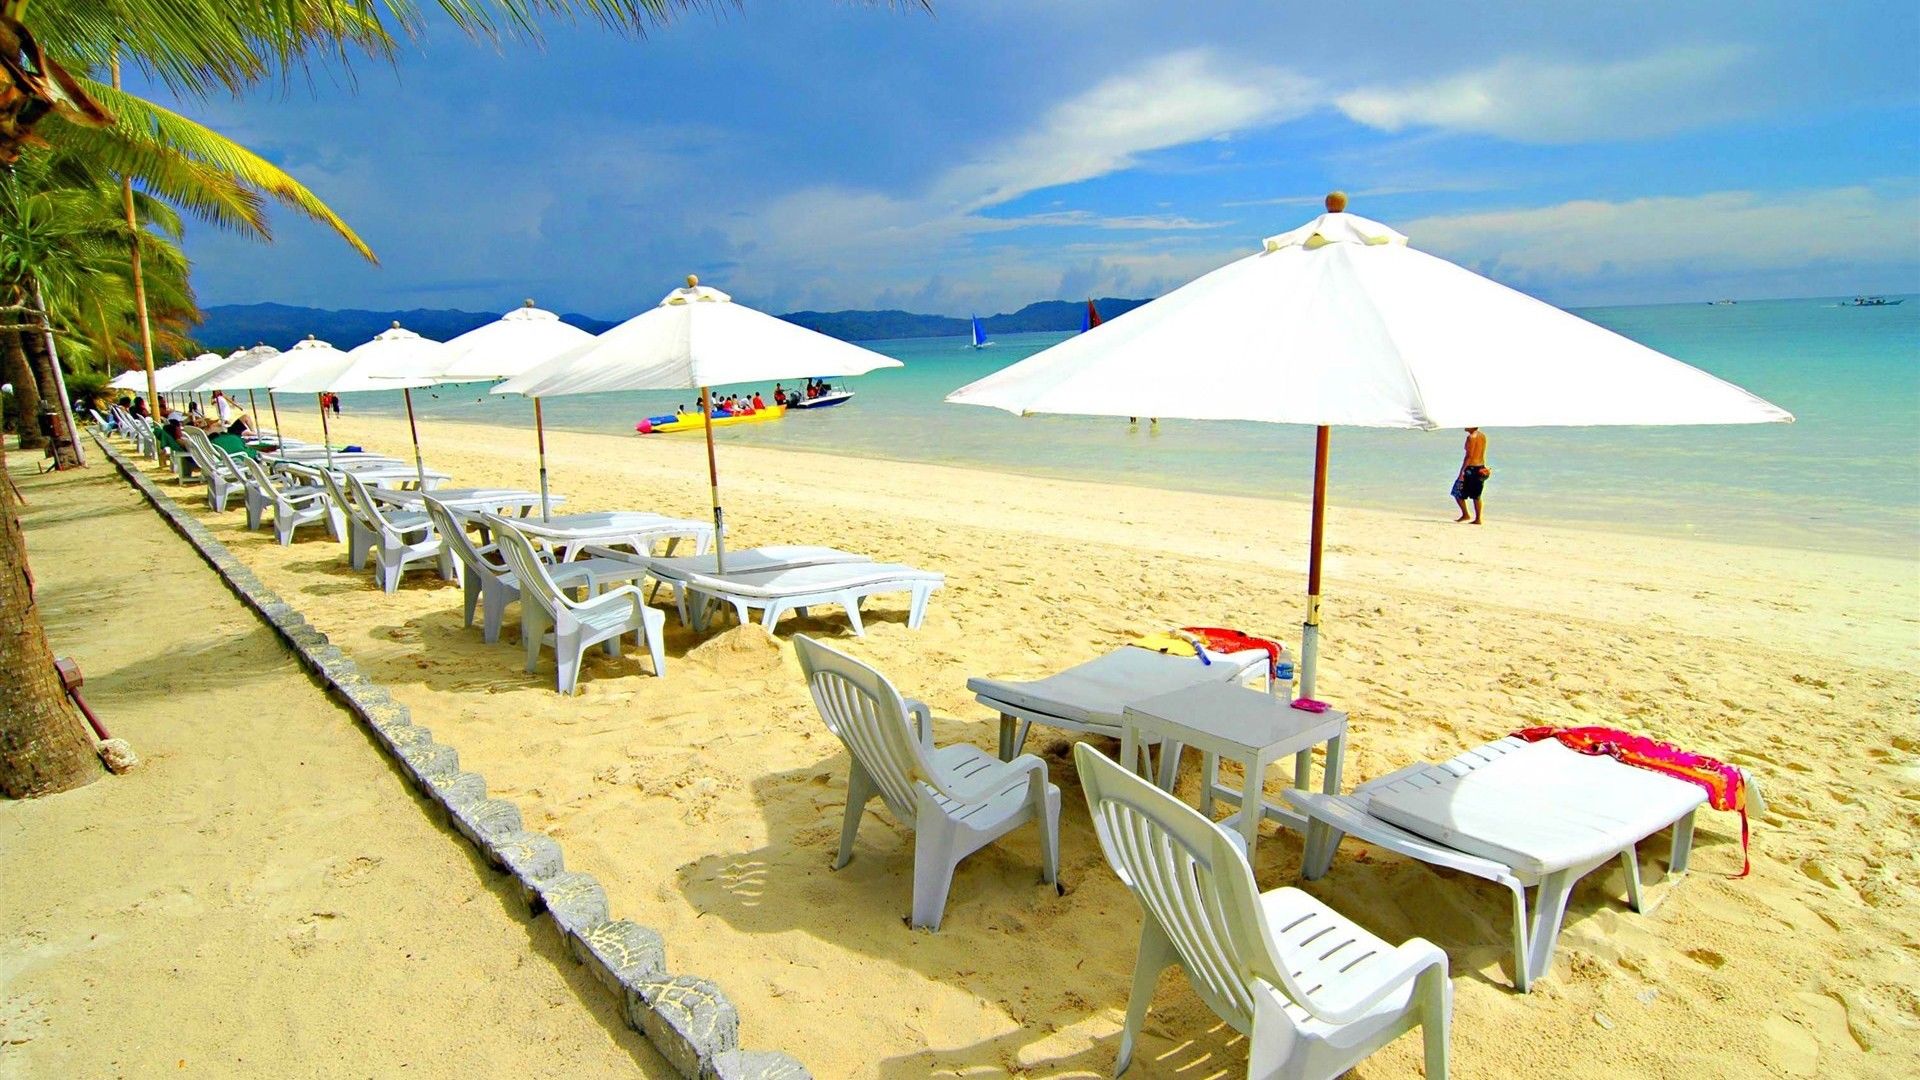 菲律宾阳光沙滩海边风景桌面壁纸,这是我们的